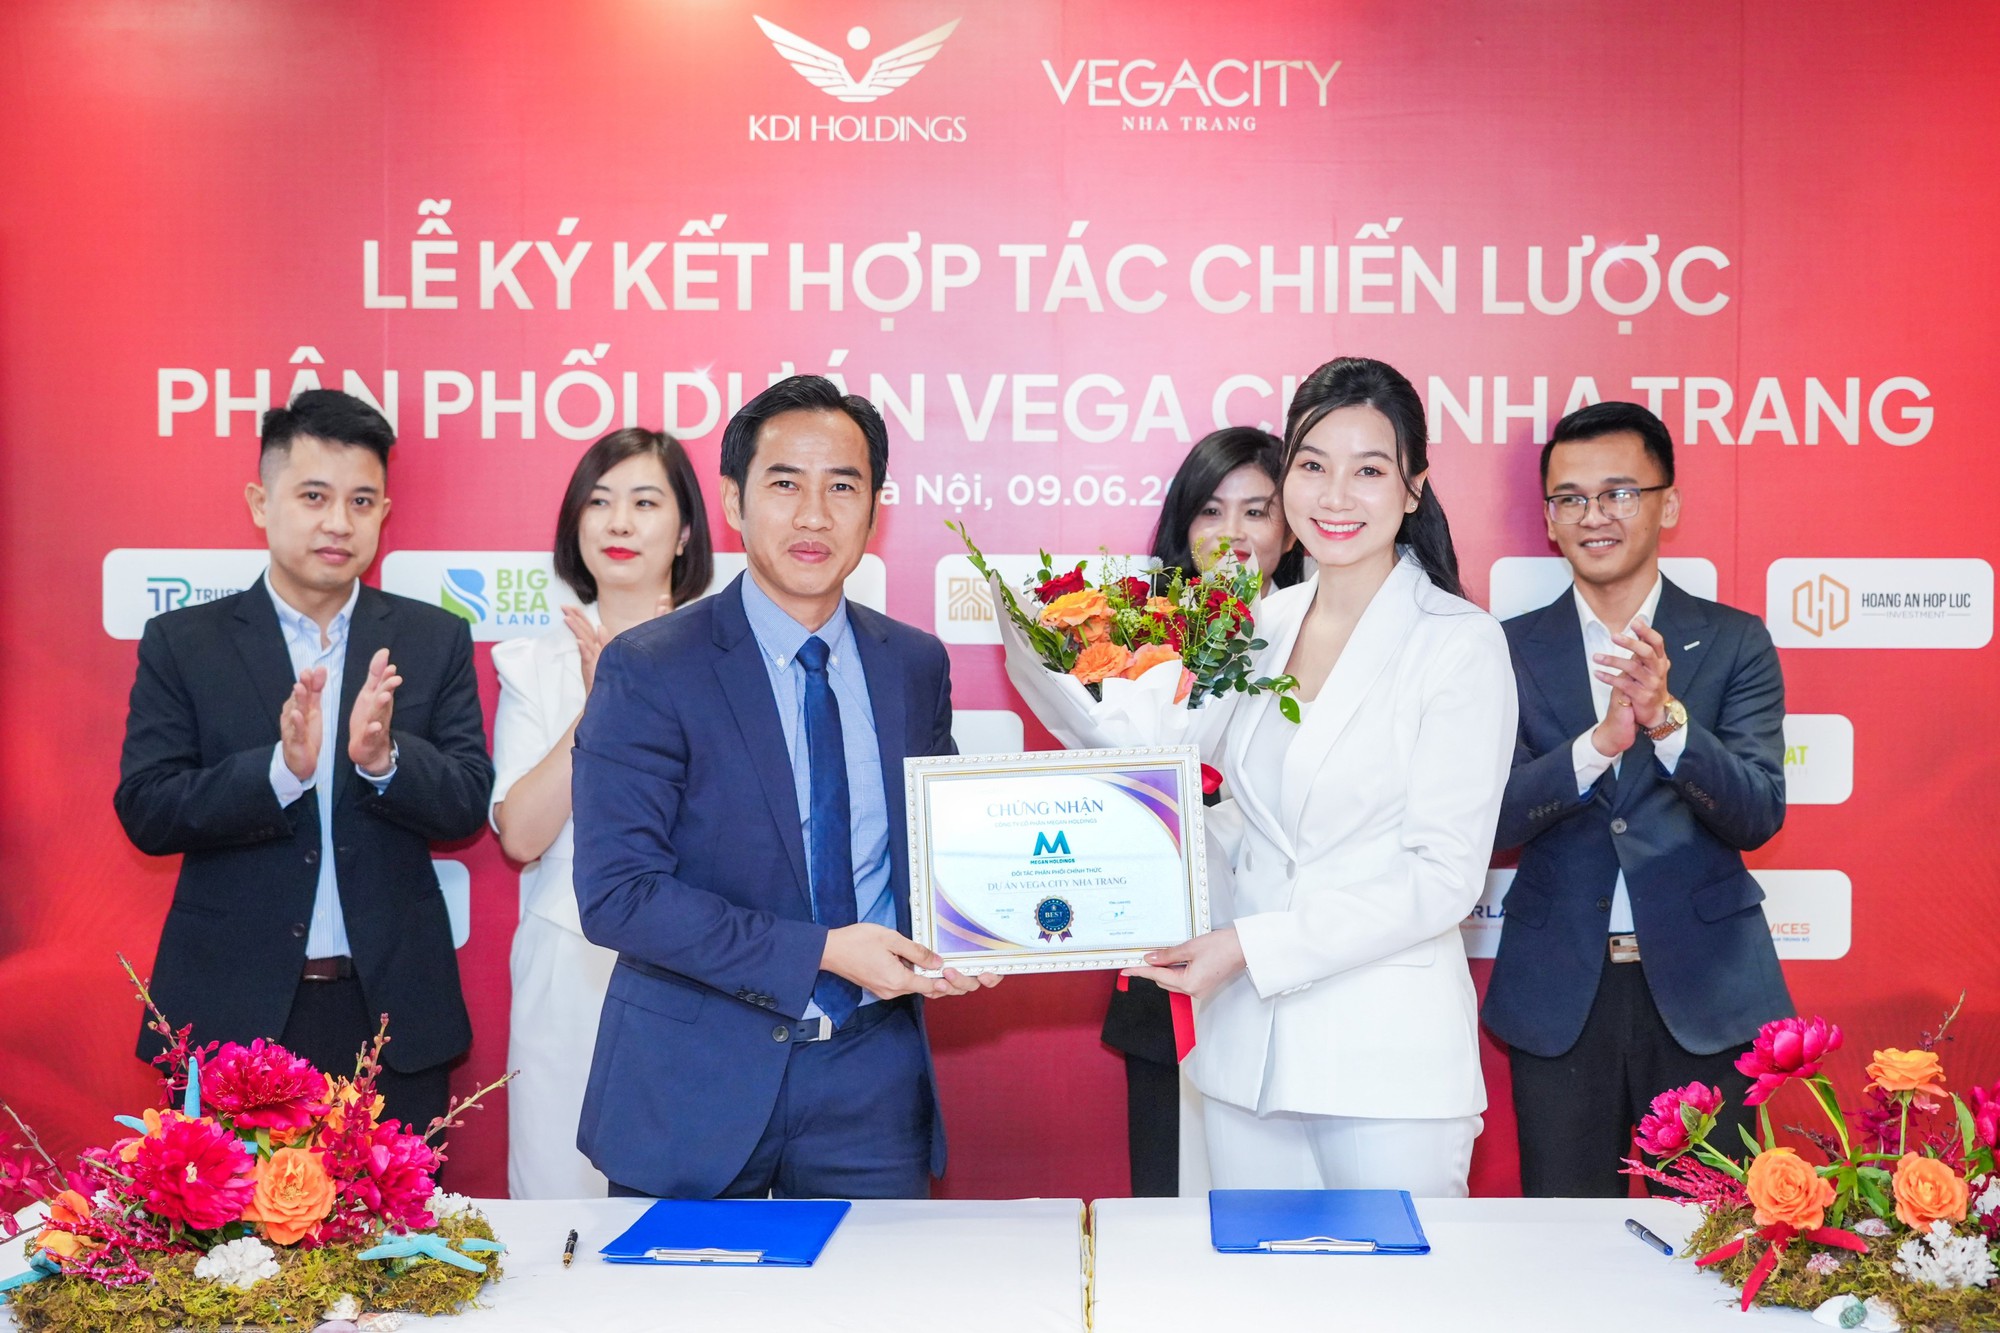 Vega City Nha Trang ký kết với 20 đại lý bất động sản uy tín - Ảnh 1.